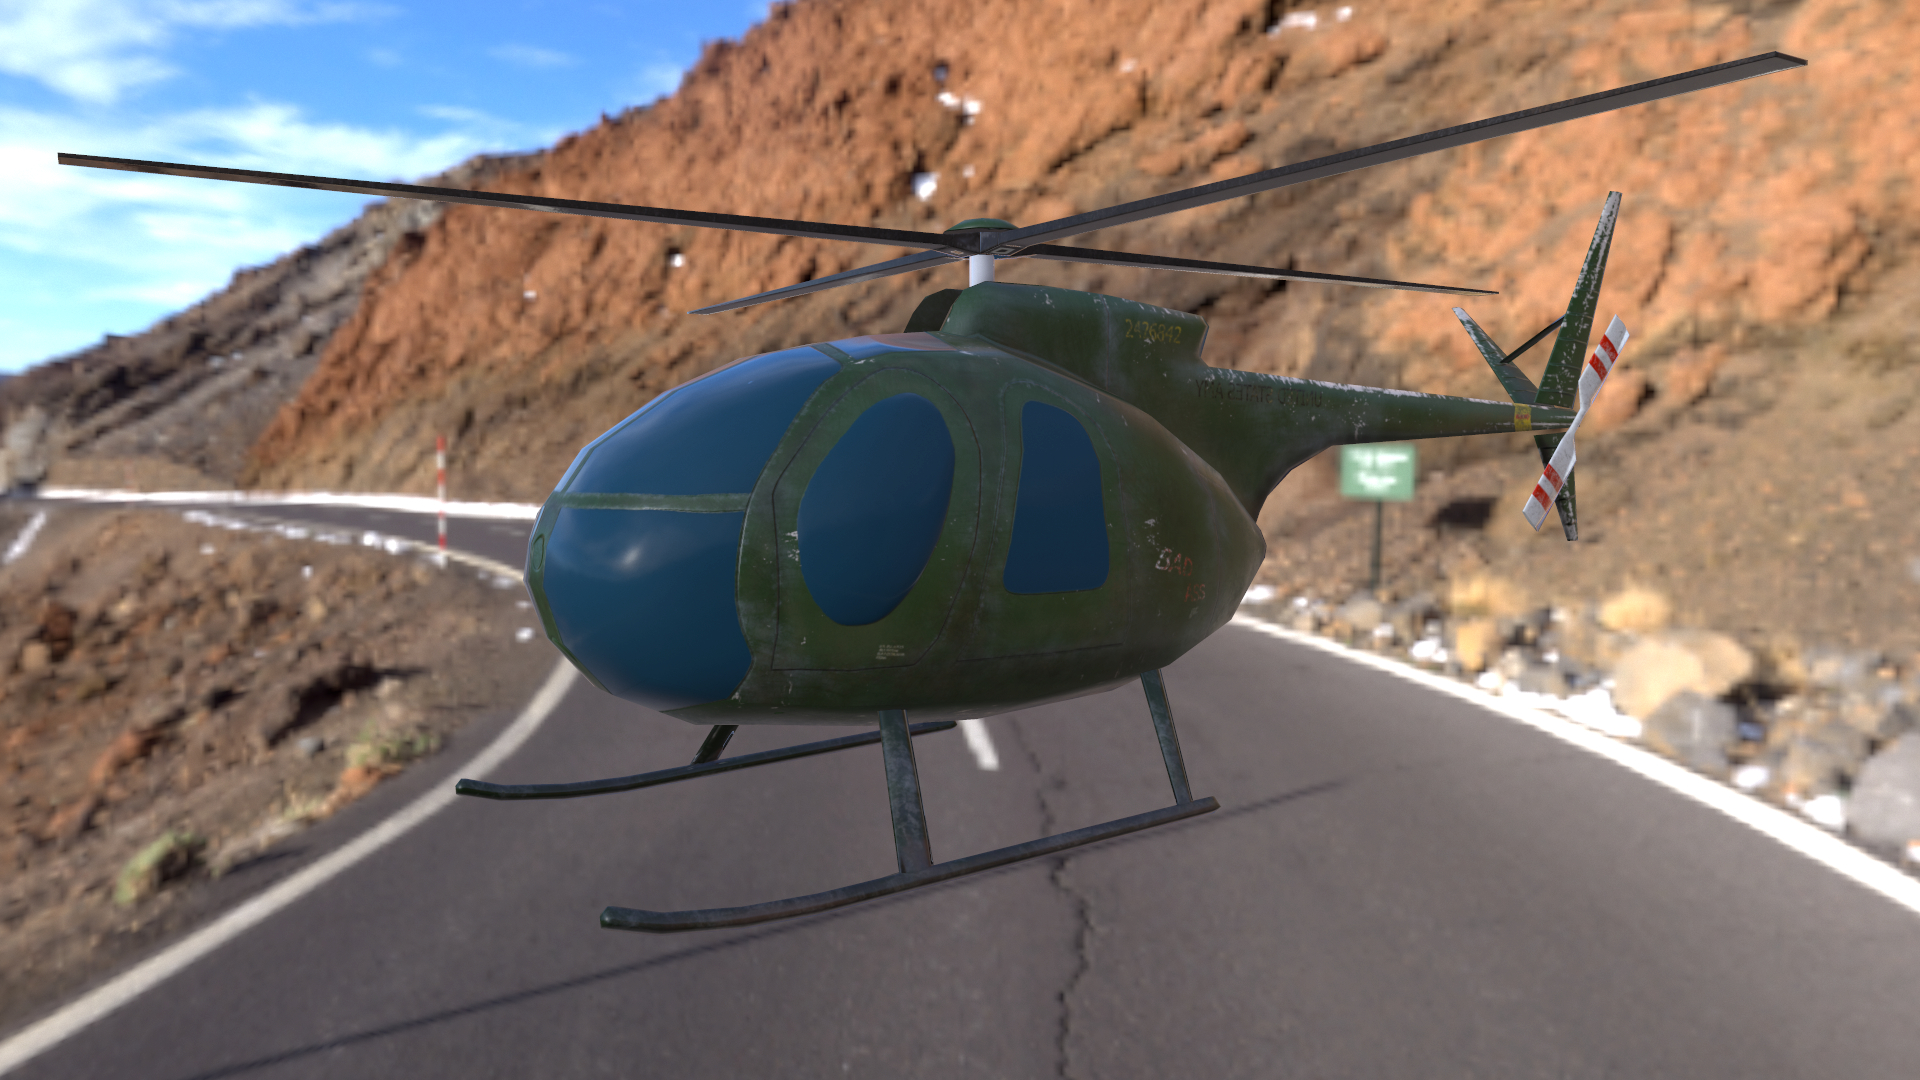 hélicoptère lowpoly modèle Hughes OH-6 Cayuse pour application mobile dans 3d max Other image